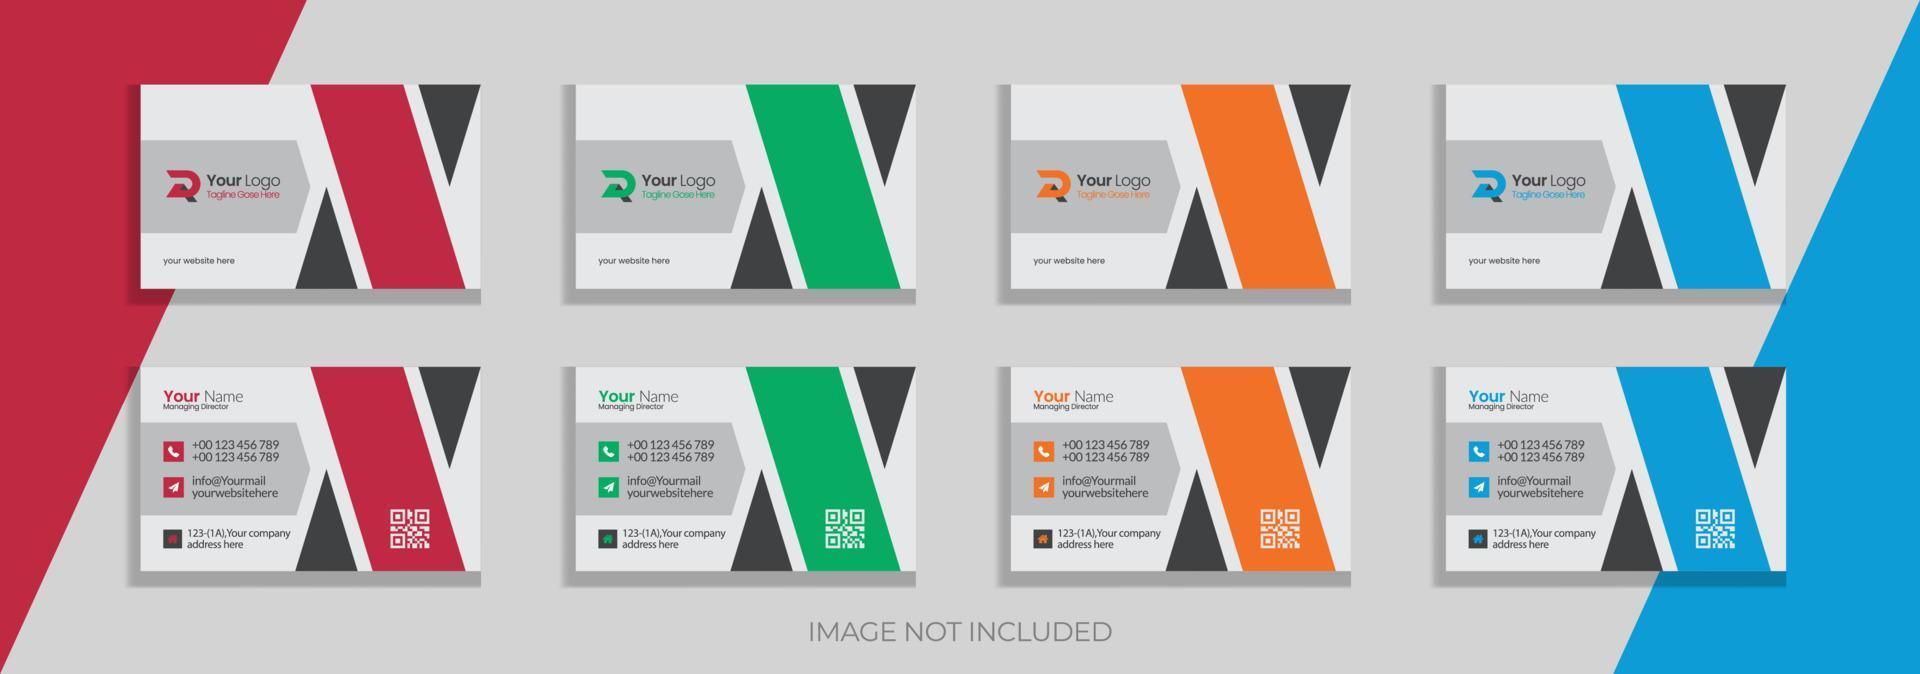 diseño de plantilla de tarjeta de visita corporativa creativa vector